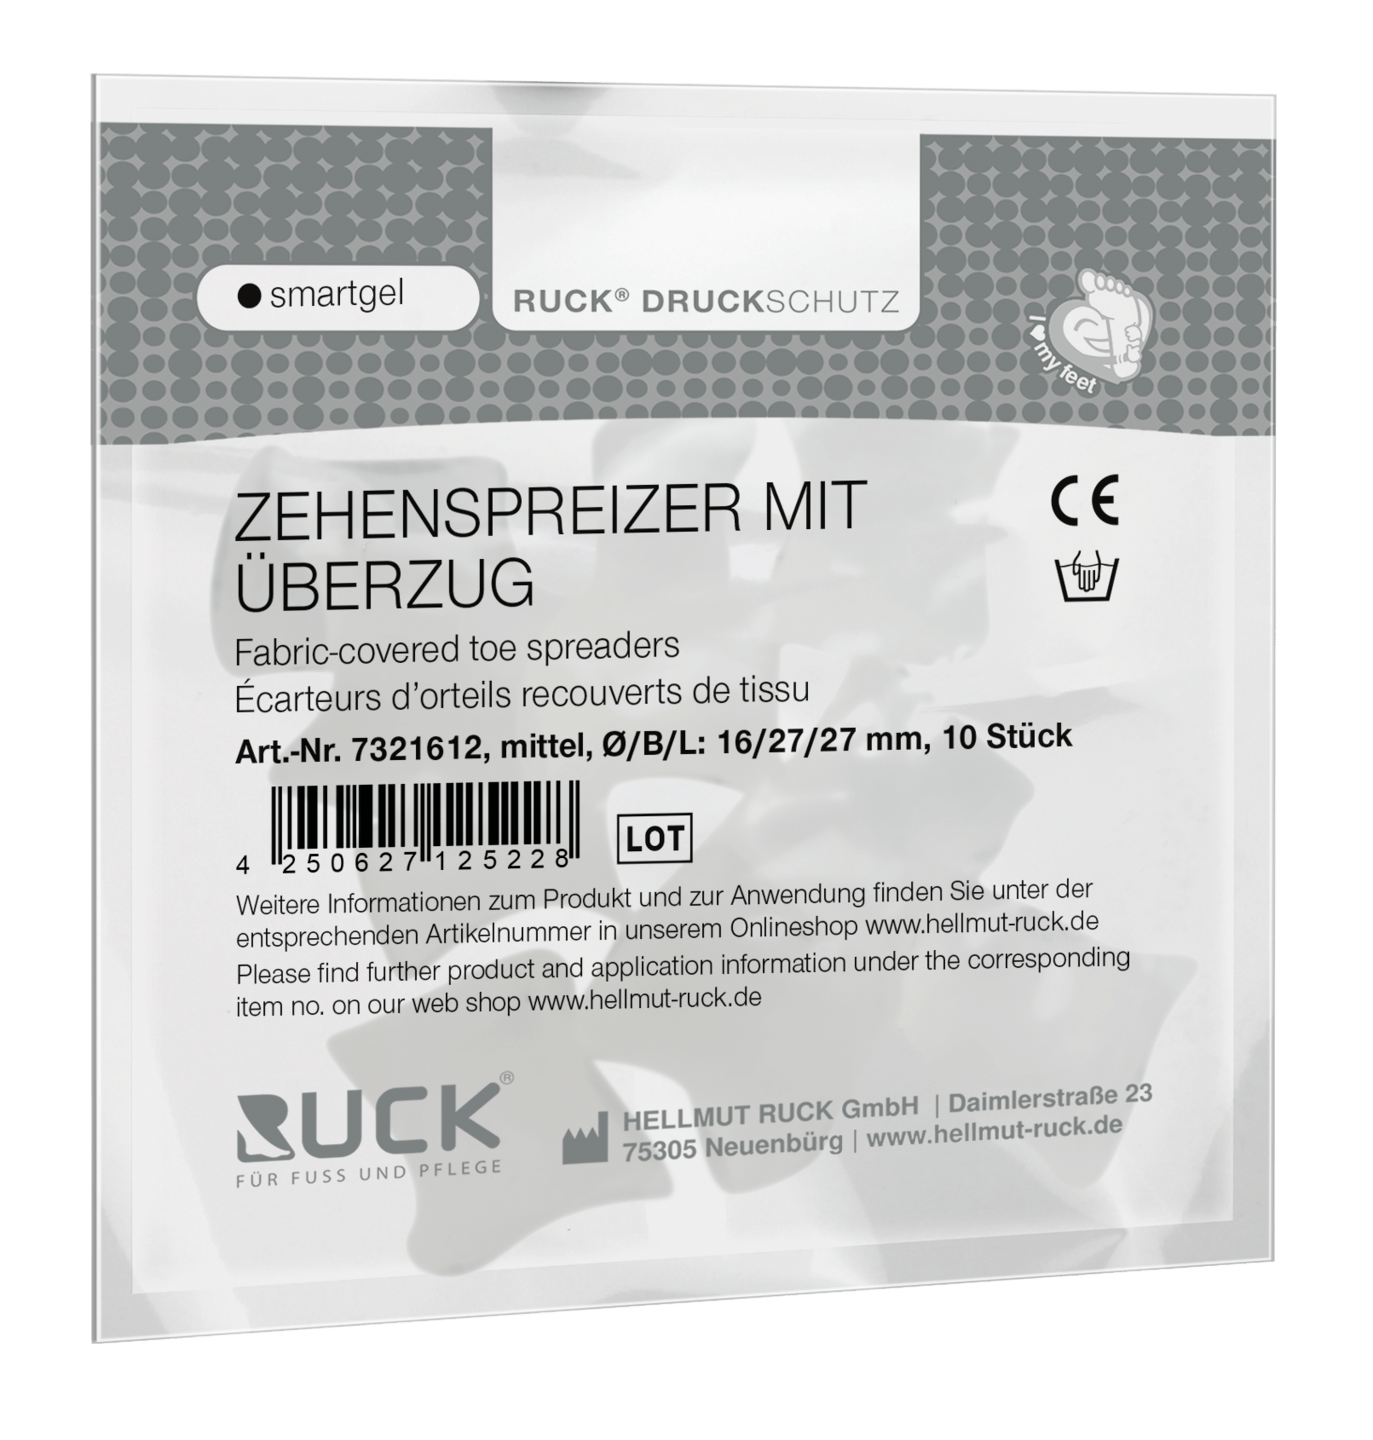 RUCK DRUCKSCHUTZ - Zehenspreizer mit Überzug